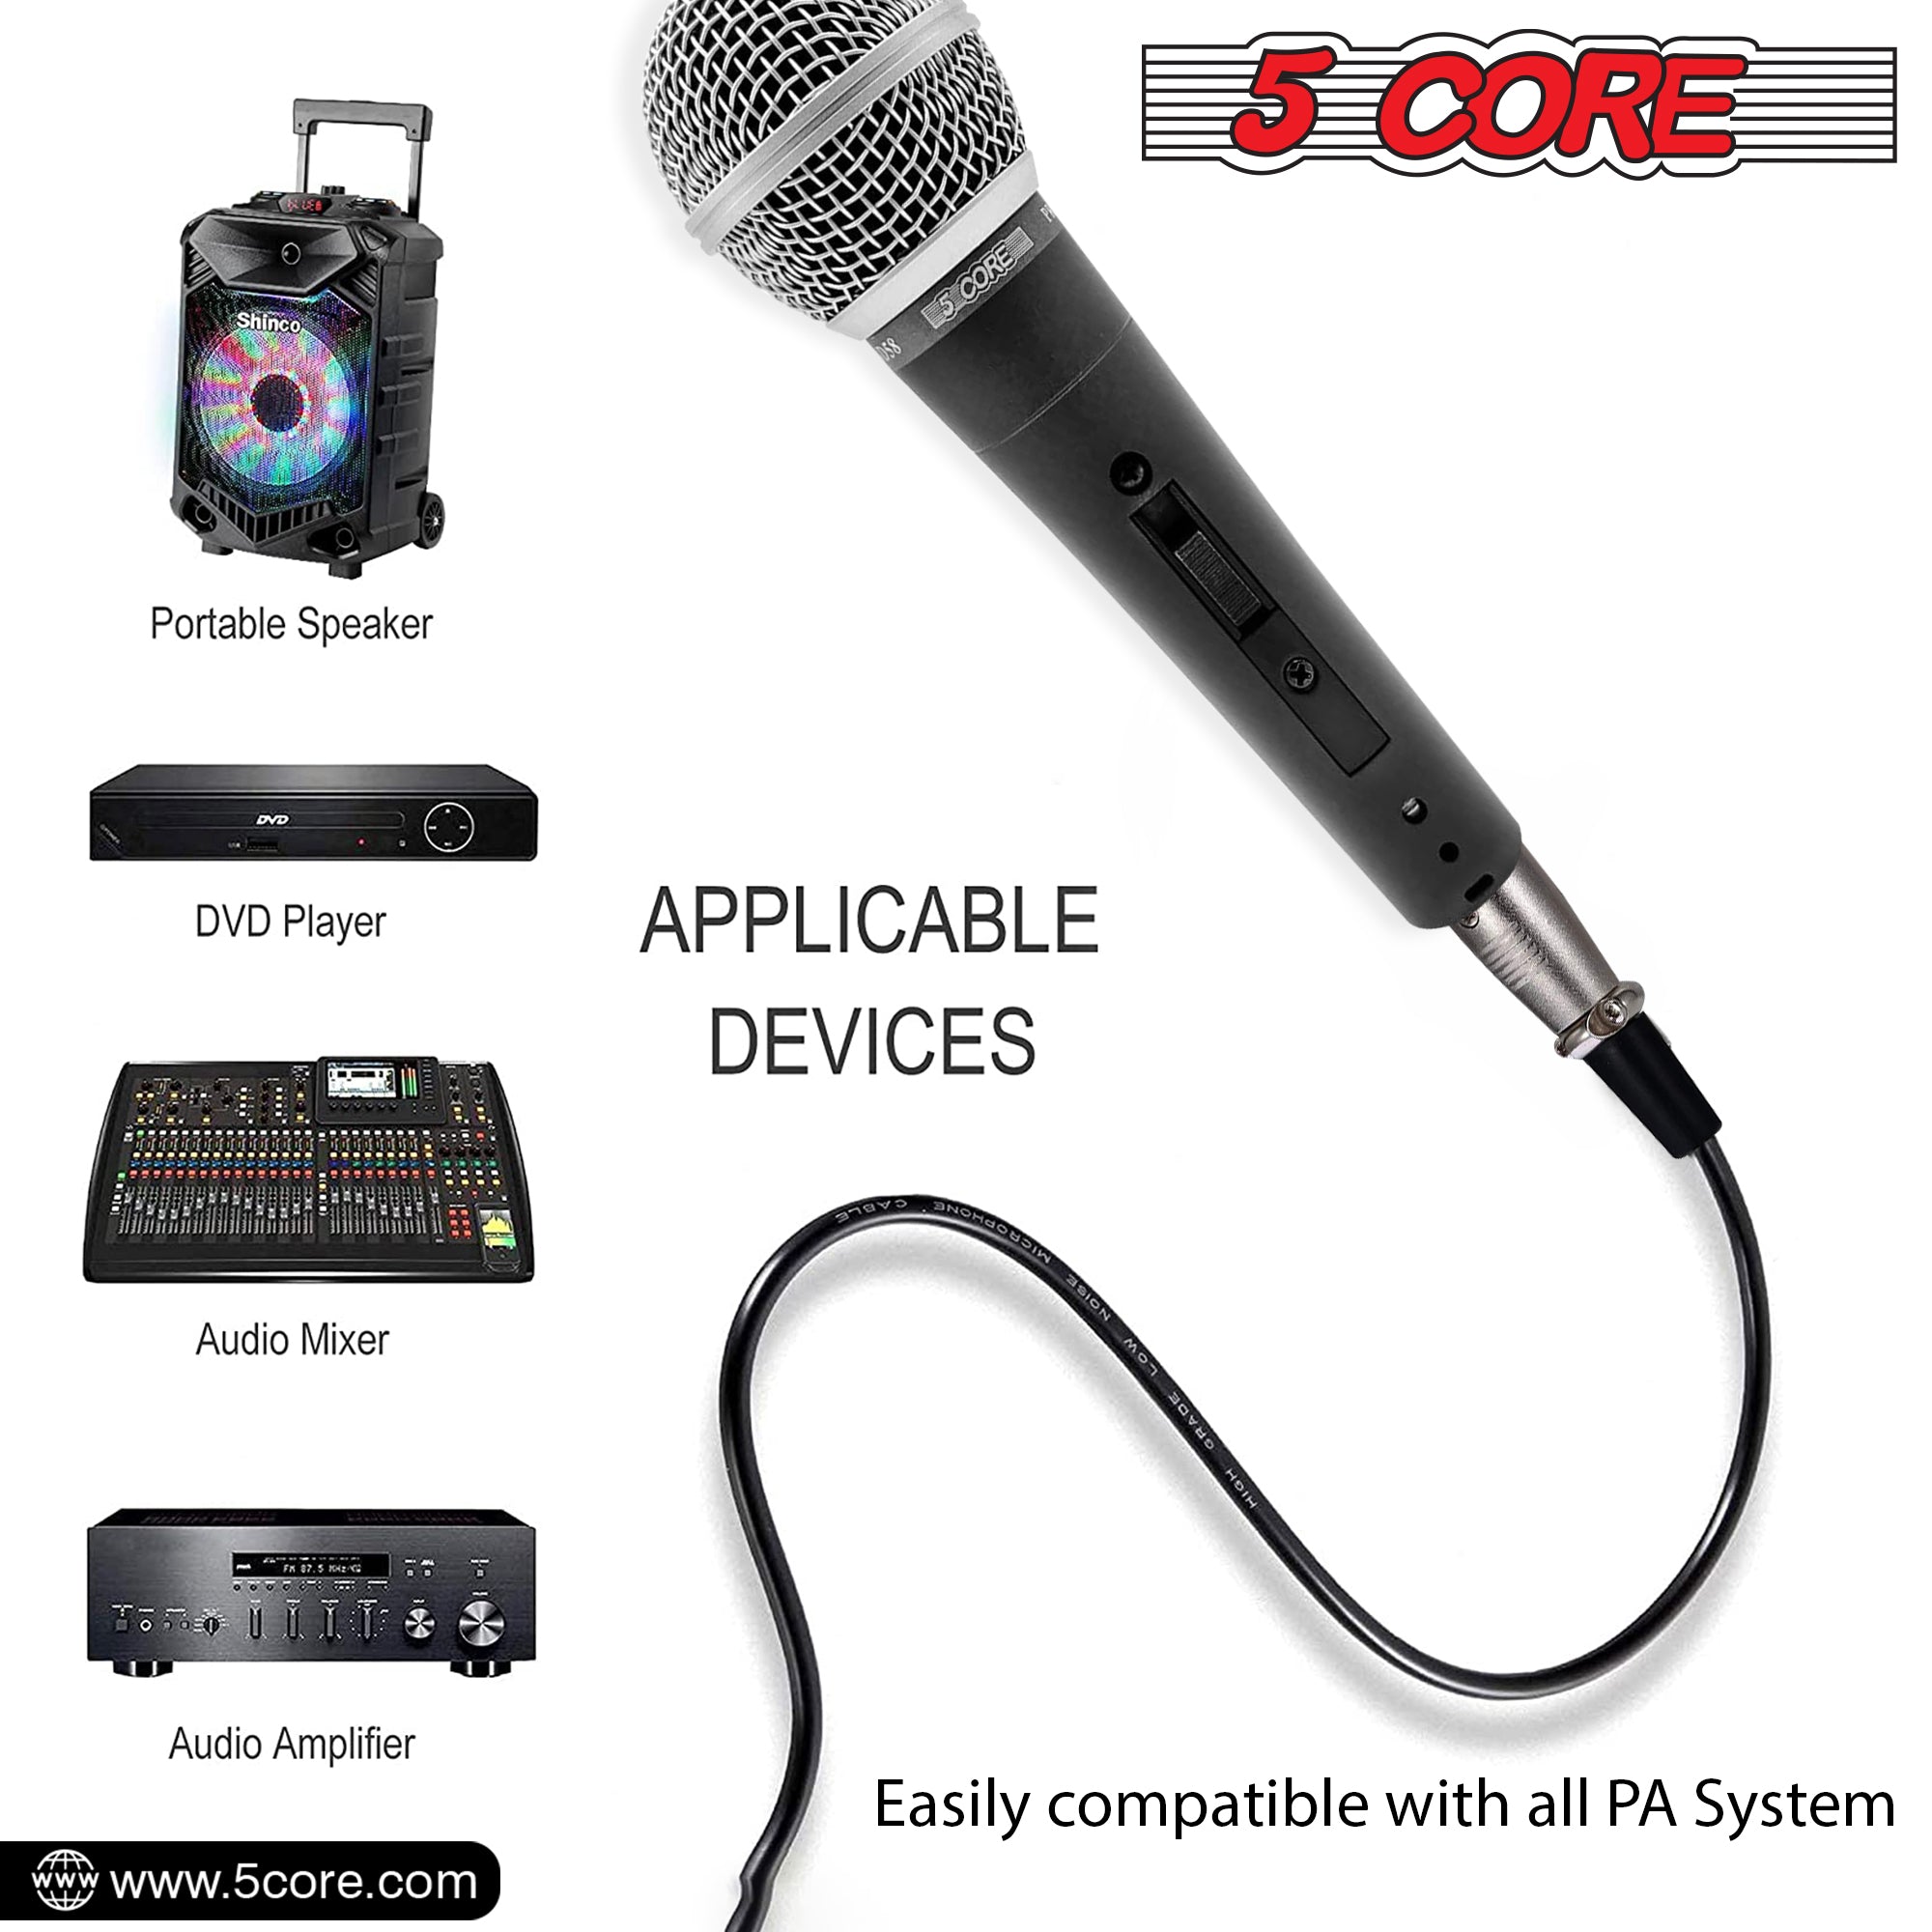 Dynamic XLR microphone ideal for karaoke singing.